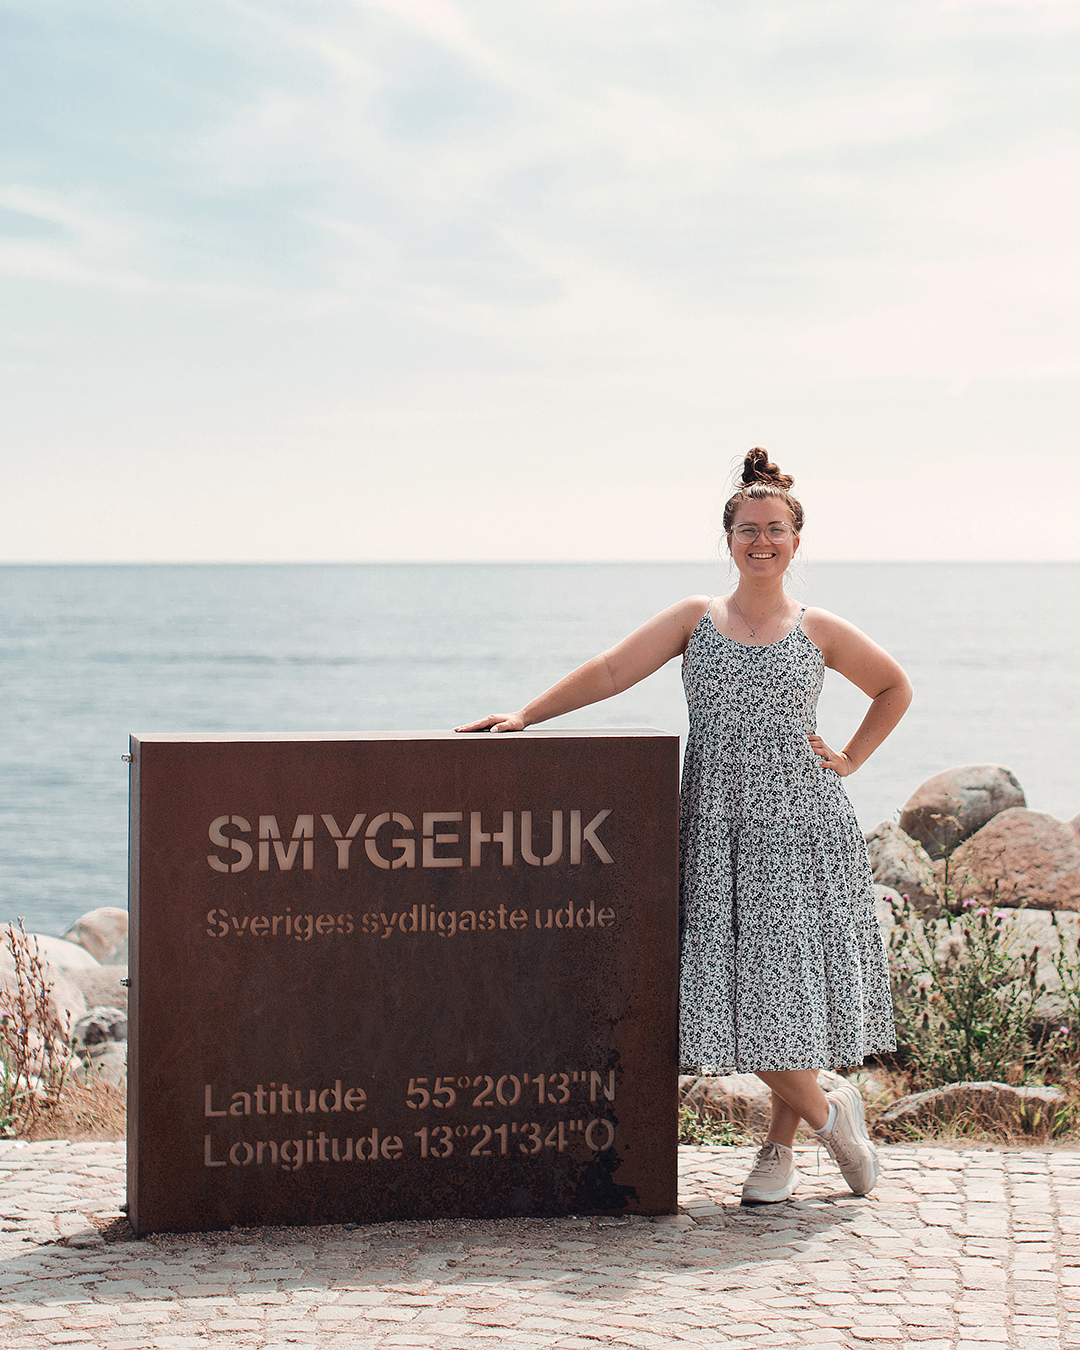 Smygehuk, Sveriges sydligaste udde